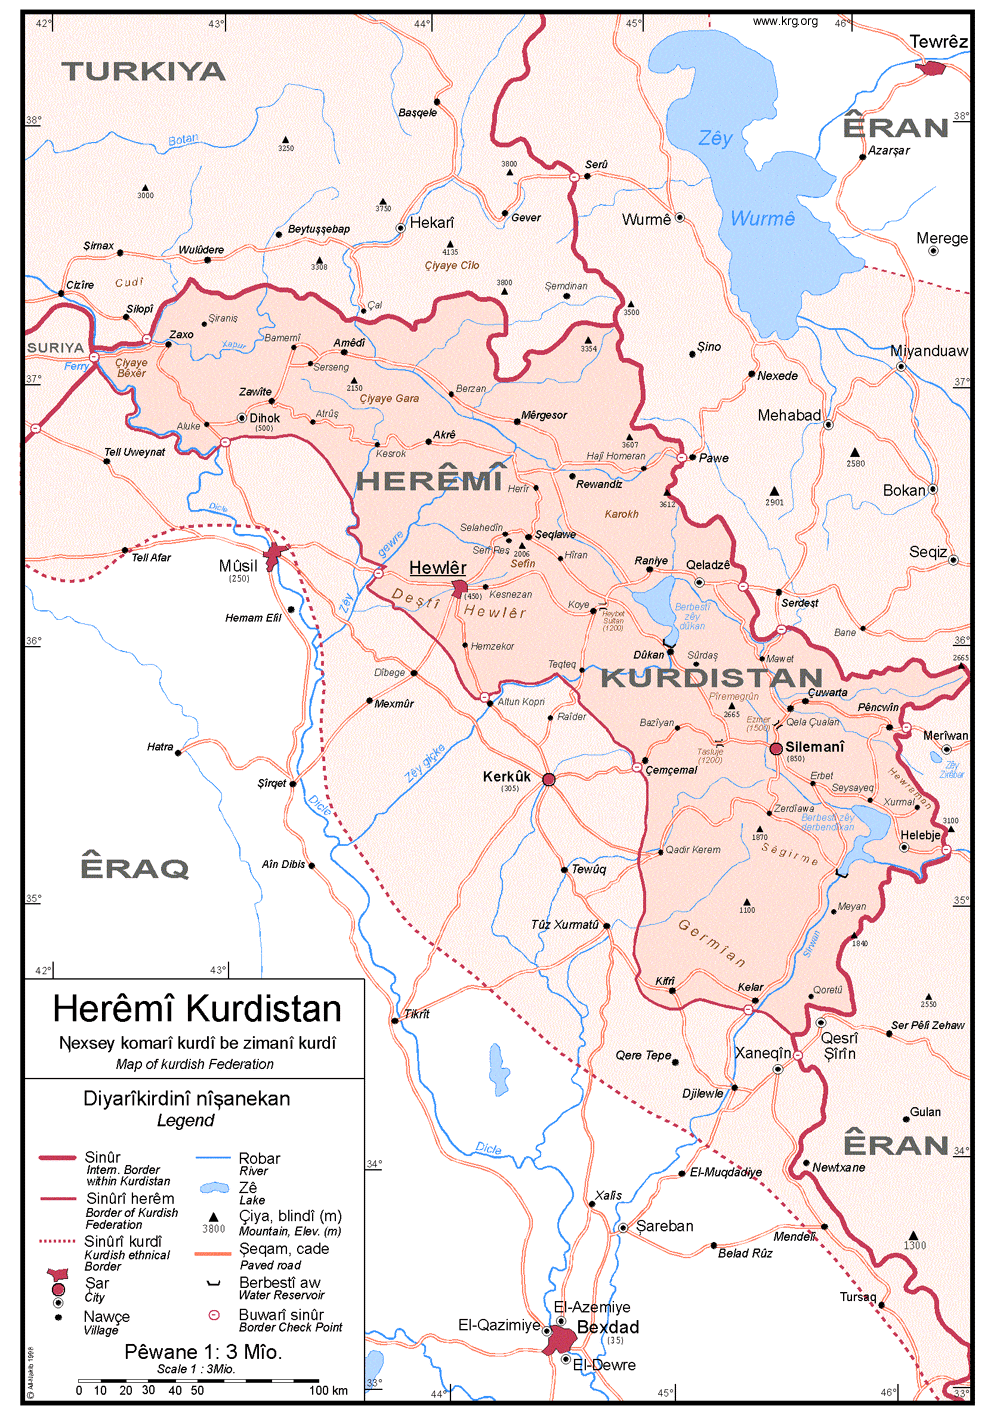 kurdistan-basur-mezin.png